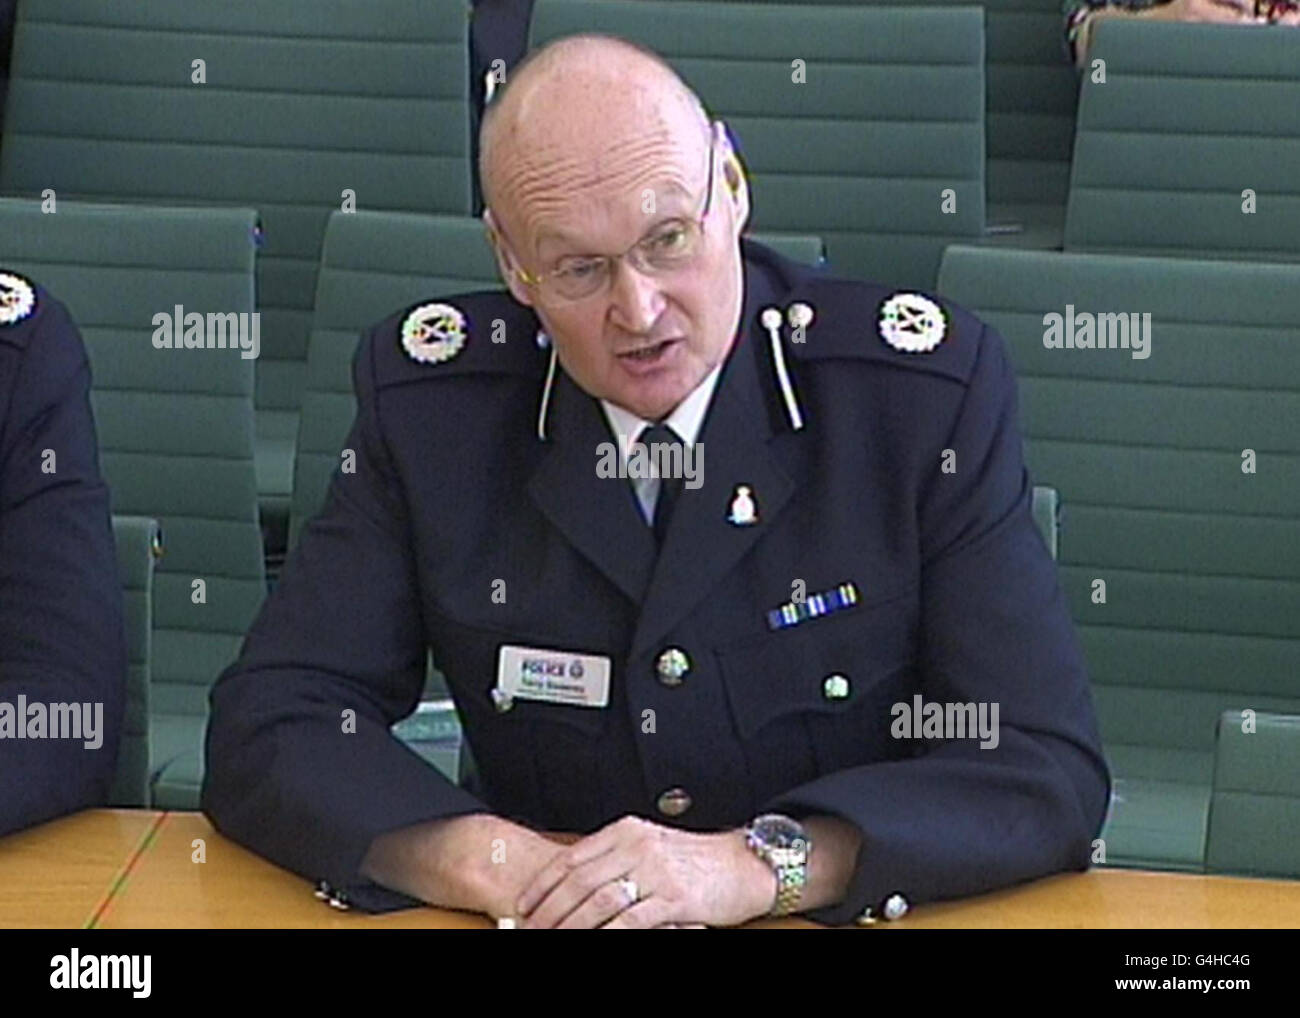 Terry Sweeney, stellvertretender Polizeichef von Greater Manchester, trat vor dem Innenausschuss des Unterhauses im Zentrum von London auf, wo er Fragen zur Polizei bezüglich der jüngsten Unruhen beantwortete. Stockfoto